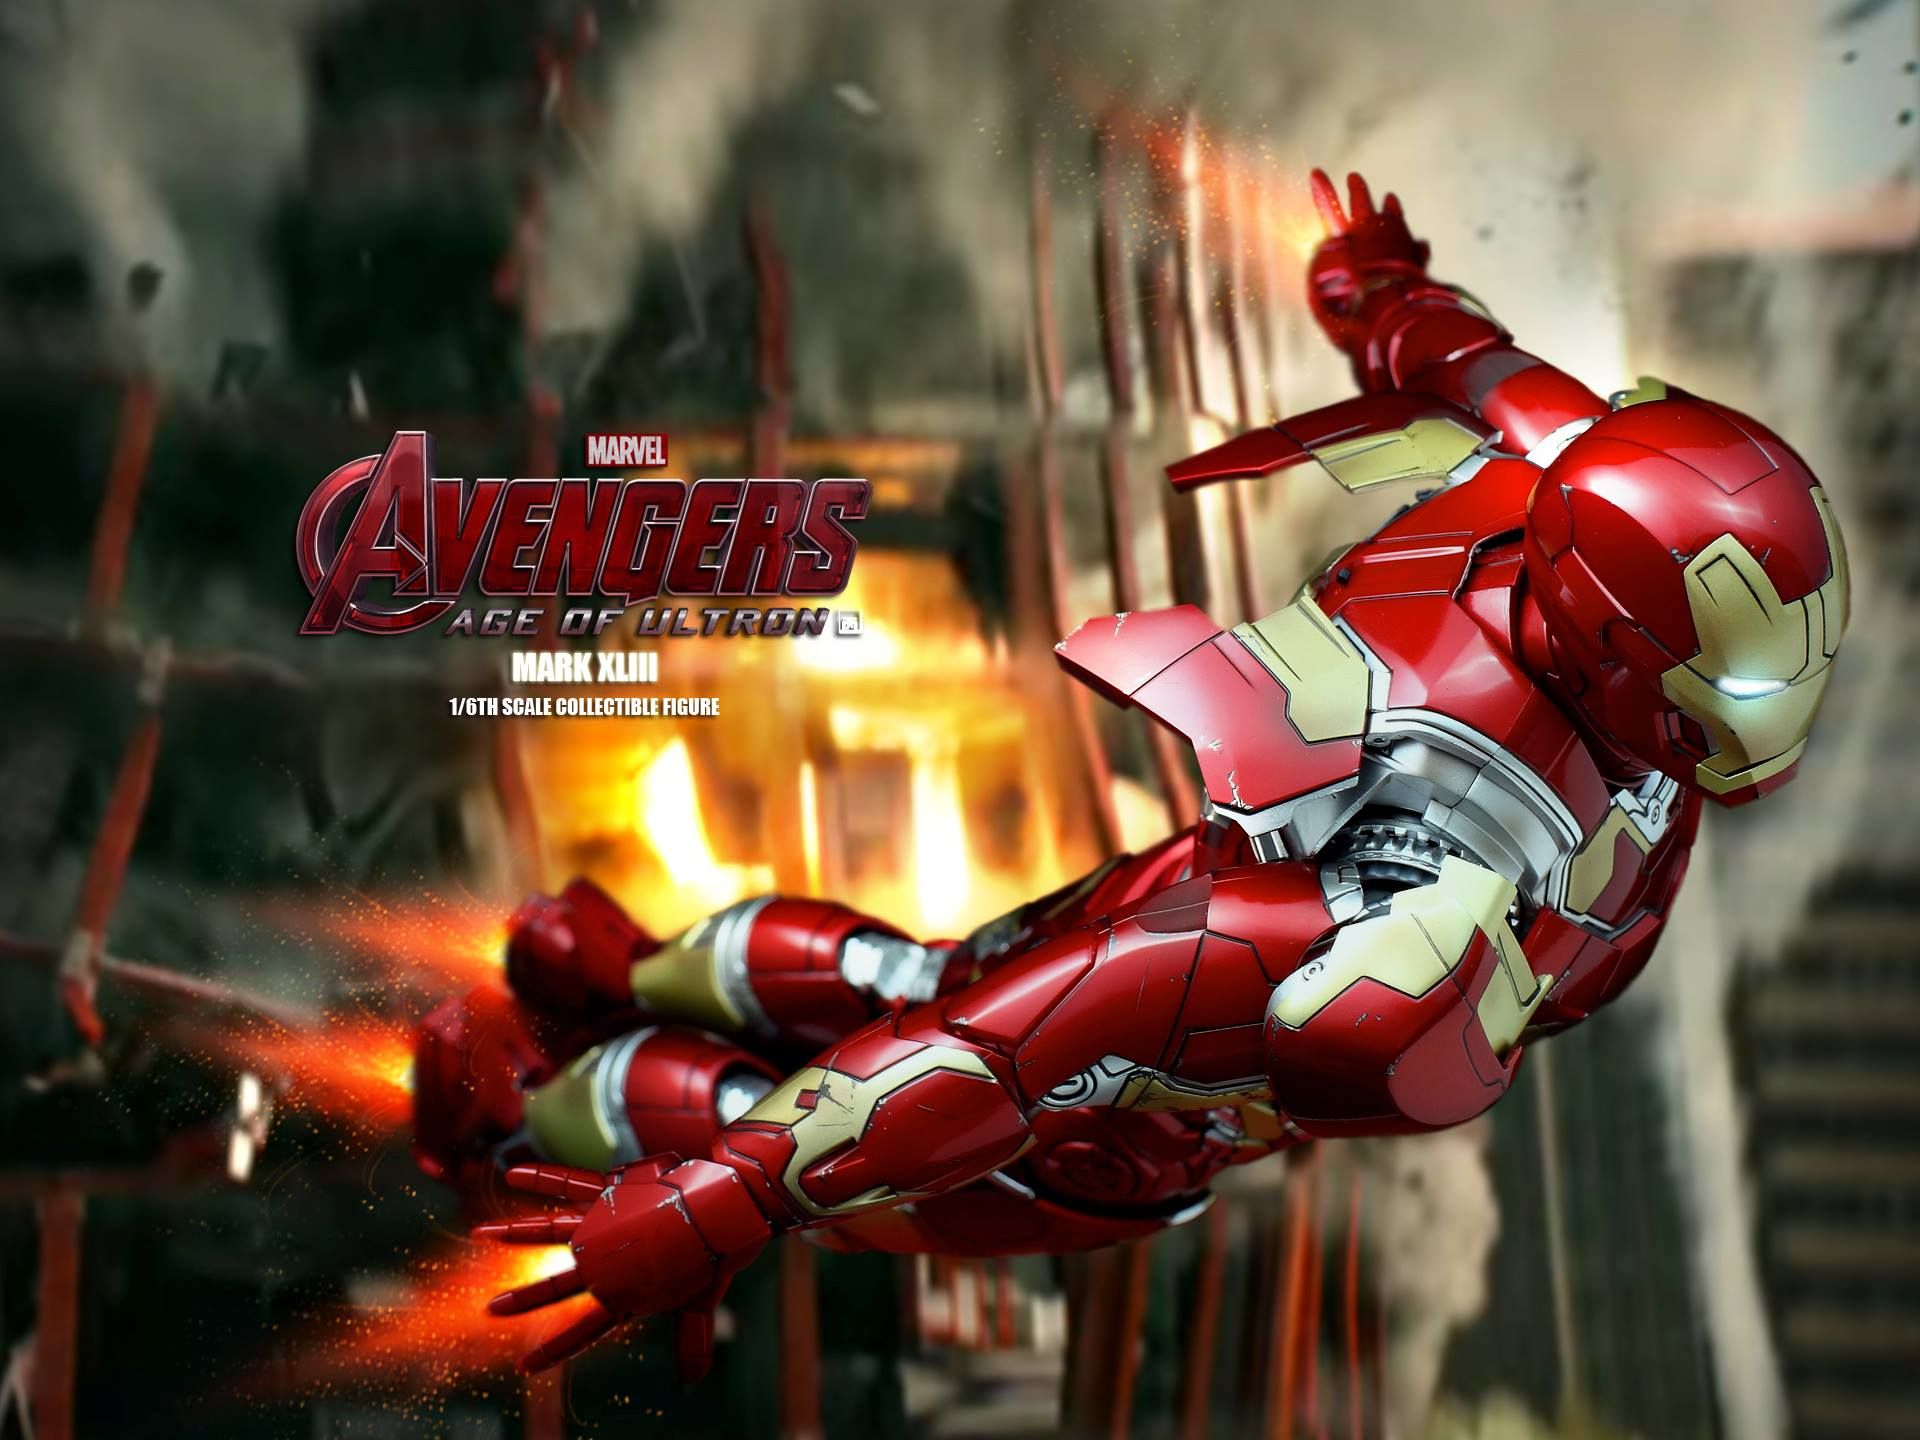 Avengers 2 Iron Man Mark XLIII Action Figure Photo 4